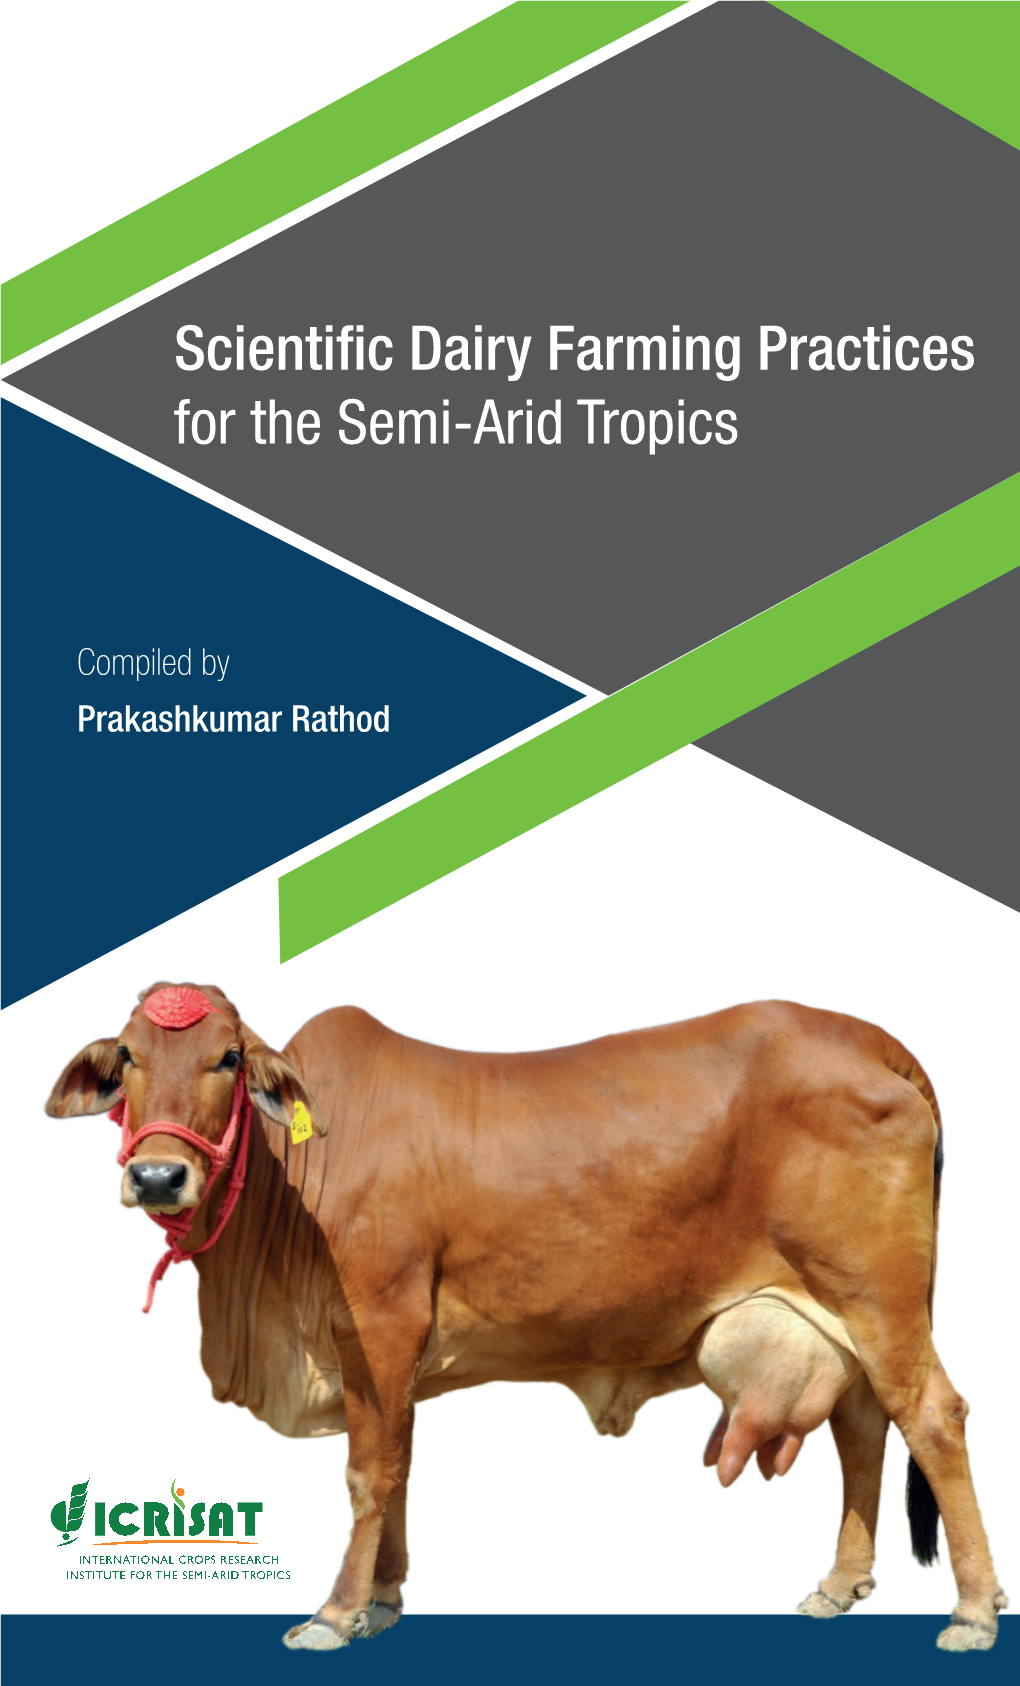 Scientific Dairy Farming Practices for the Semi-Arid Tropics